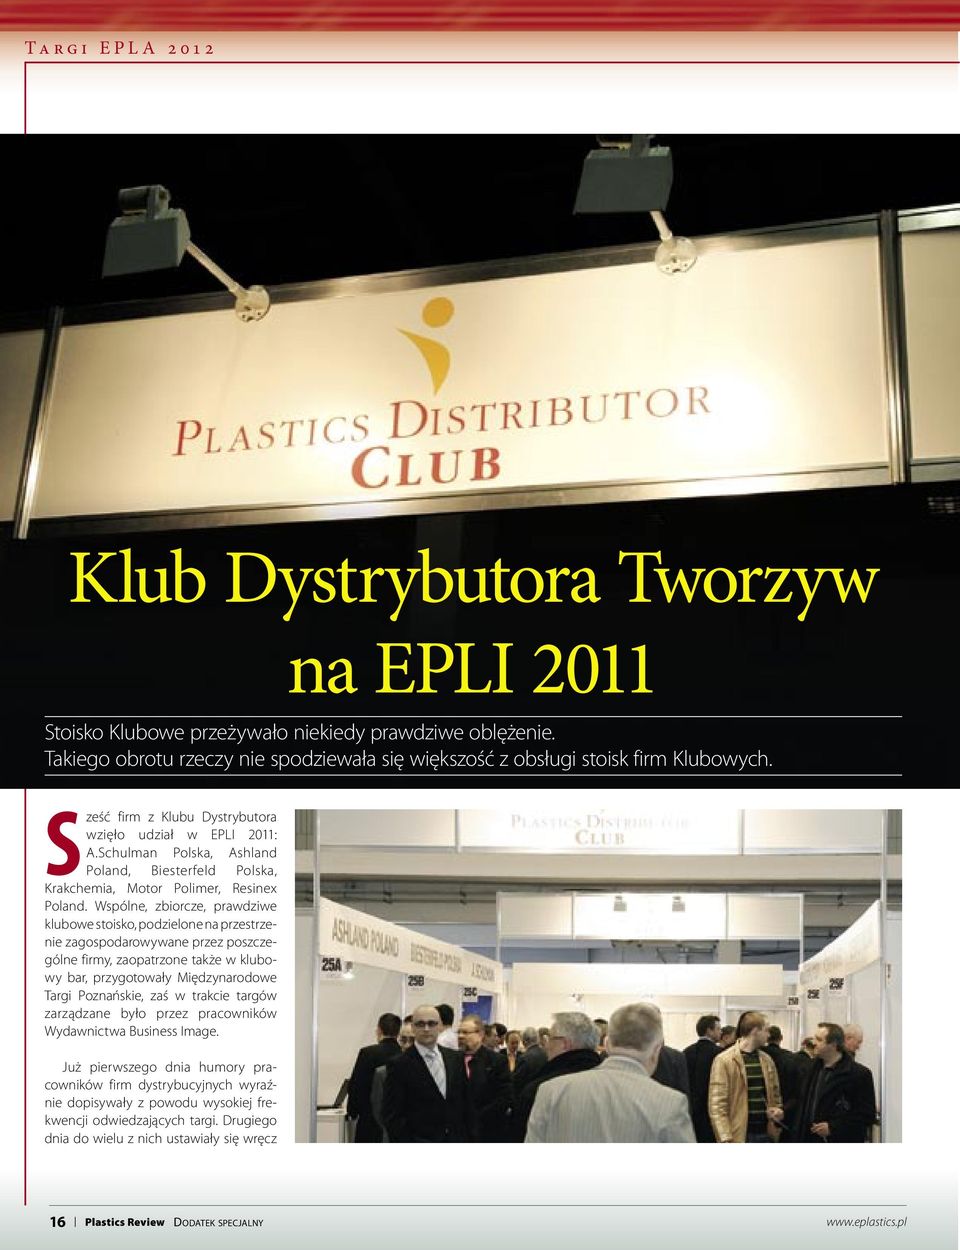 Wspólne, zbiorcze, prawdziwe klubowe stoisko, podzielone na przestrzenie zagospodarowywane przez poszczególne firmy, zaopatrzone także w klubowy bar, przygotowały Międzynarodowe Targi Poznańskie, zaś